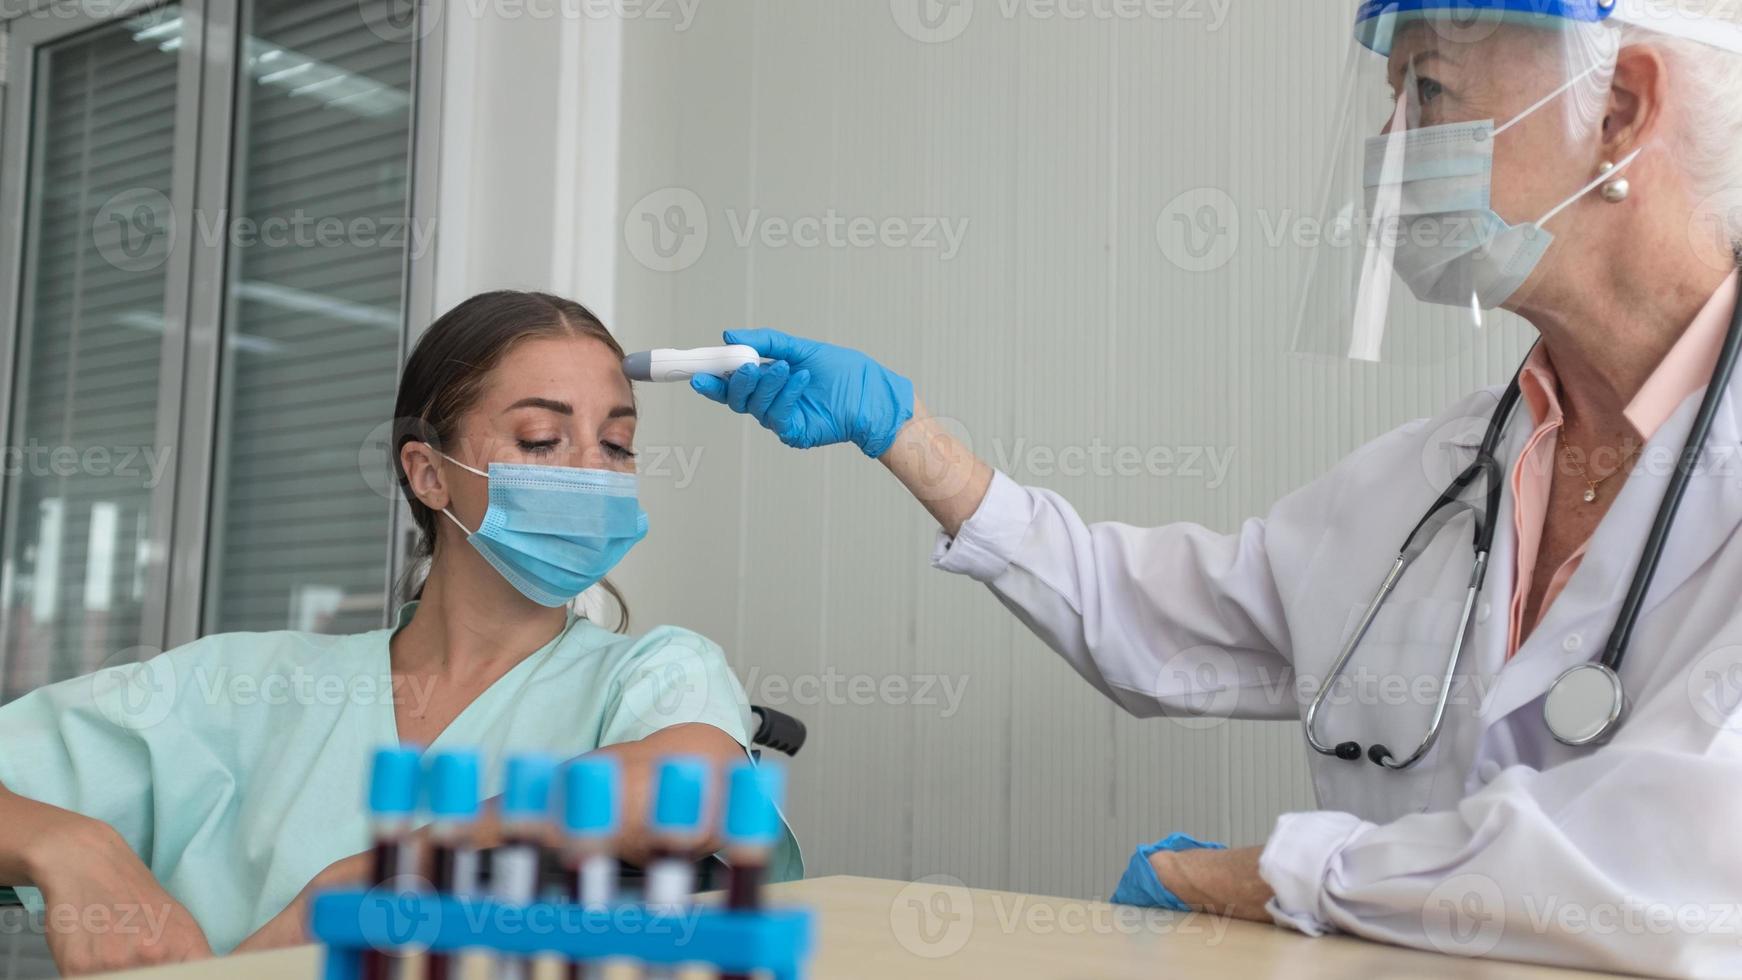 protección contra el coronavirus durante la cuarentena, doctora haciendo un examen médico a una paciente. foto